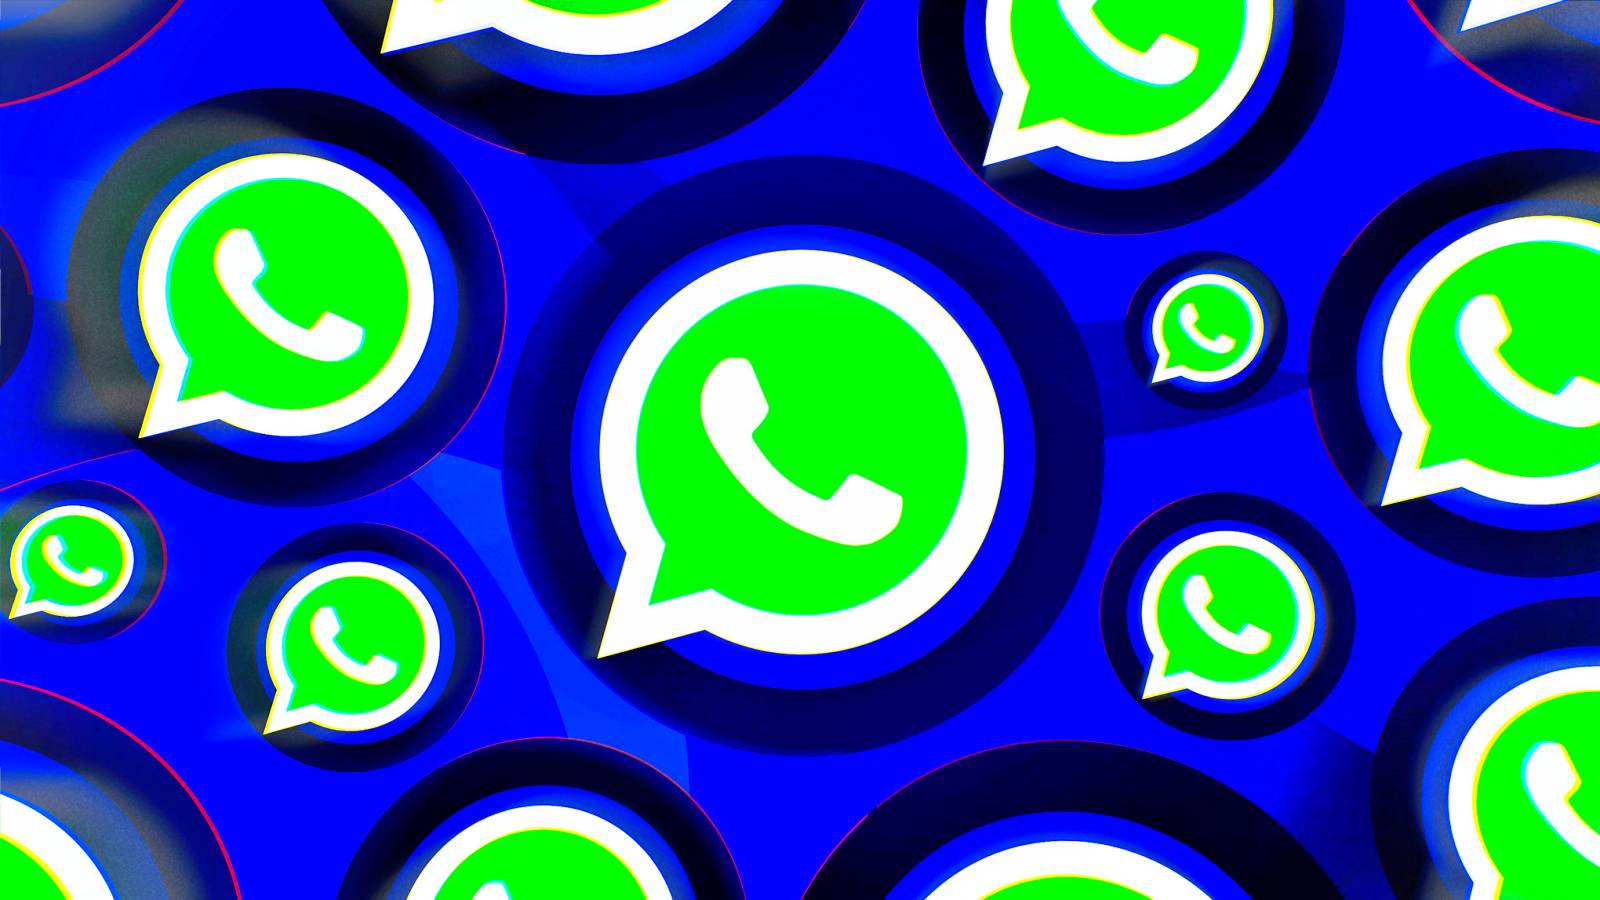 WhatsApp integrerar en ny HEMLIG ändring i applikationen